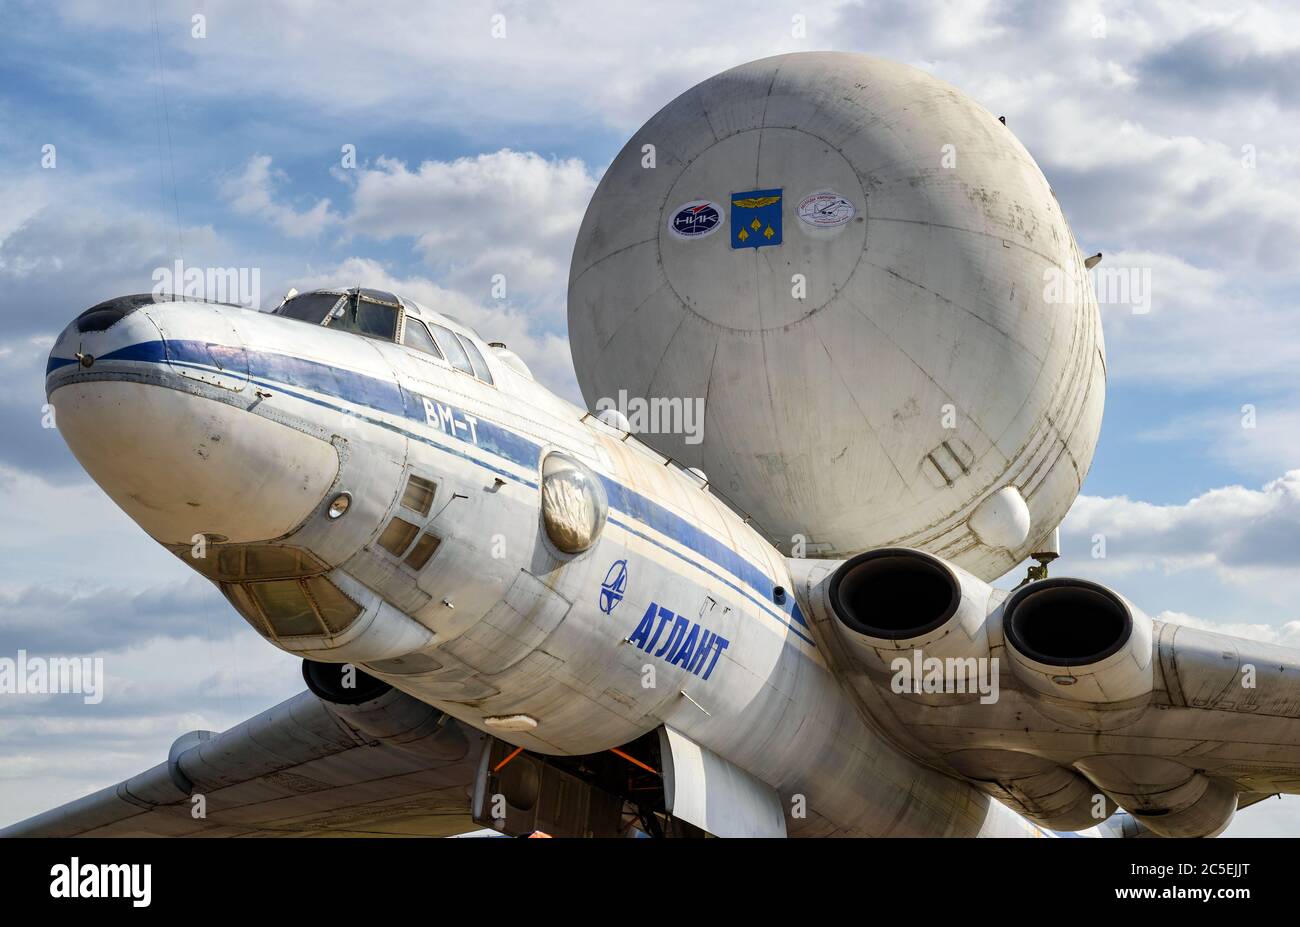 RÉGION DE MOSCOU - 28 AOÛT 2015 : l'avion de transport aérien stratégique soviétique Myaishchev VM-T Atlant au salon international de l'aviation et de l'espace (MAKS) à Banque D'Images